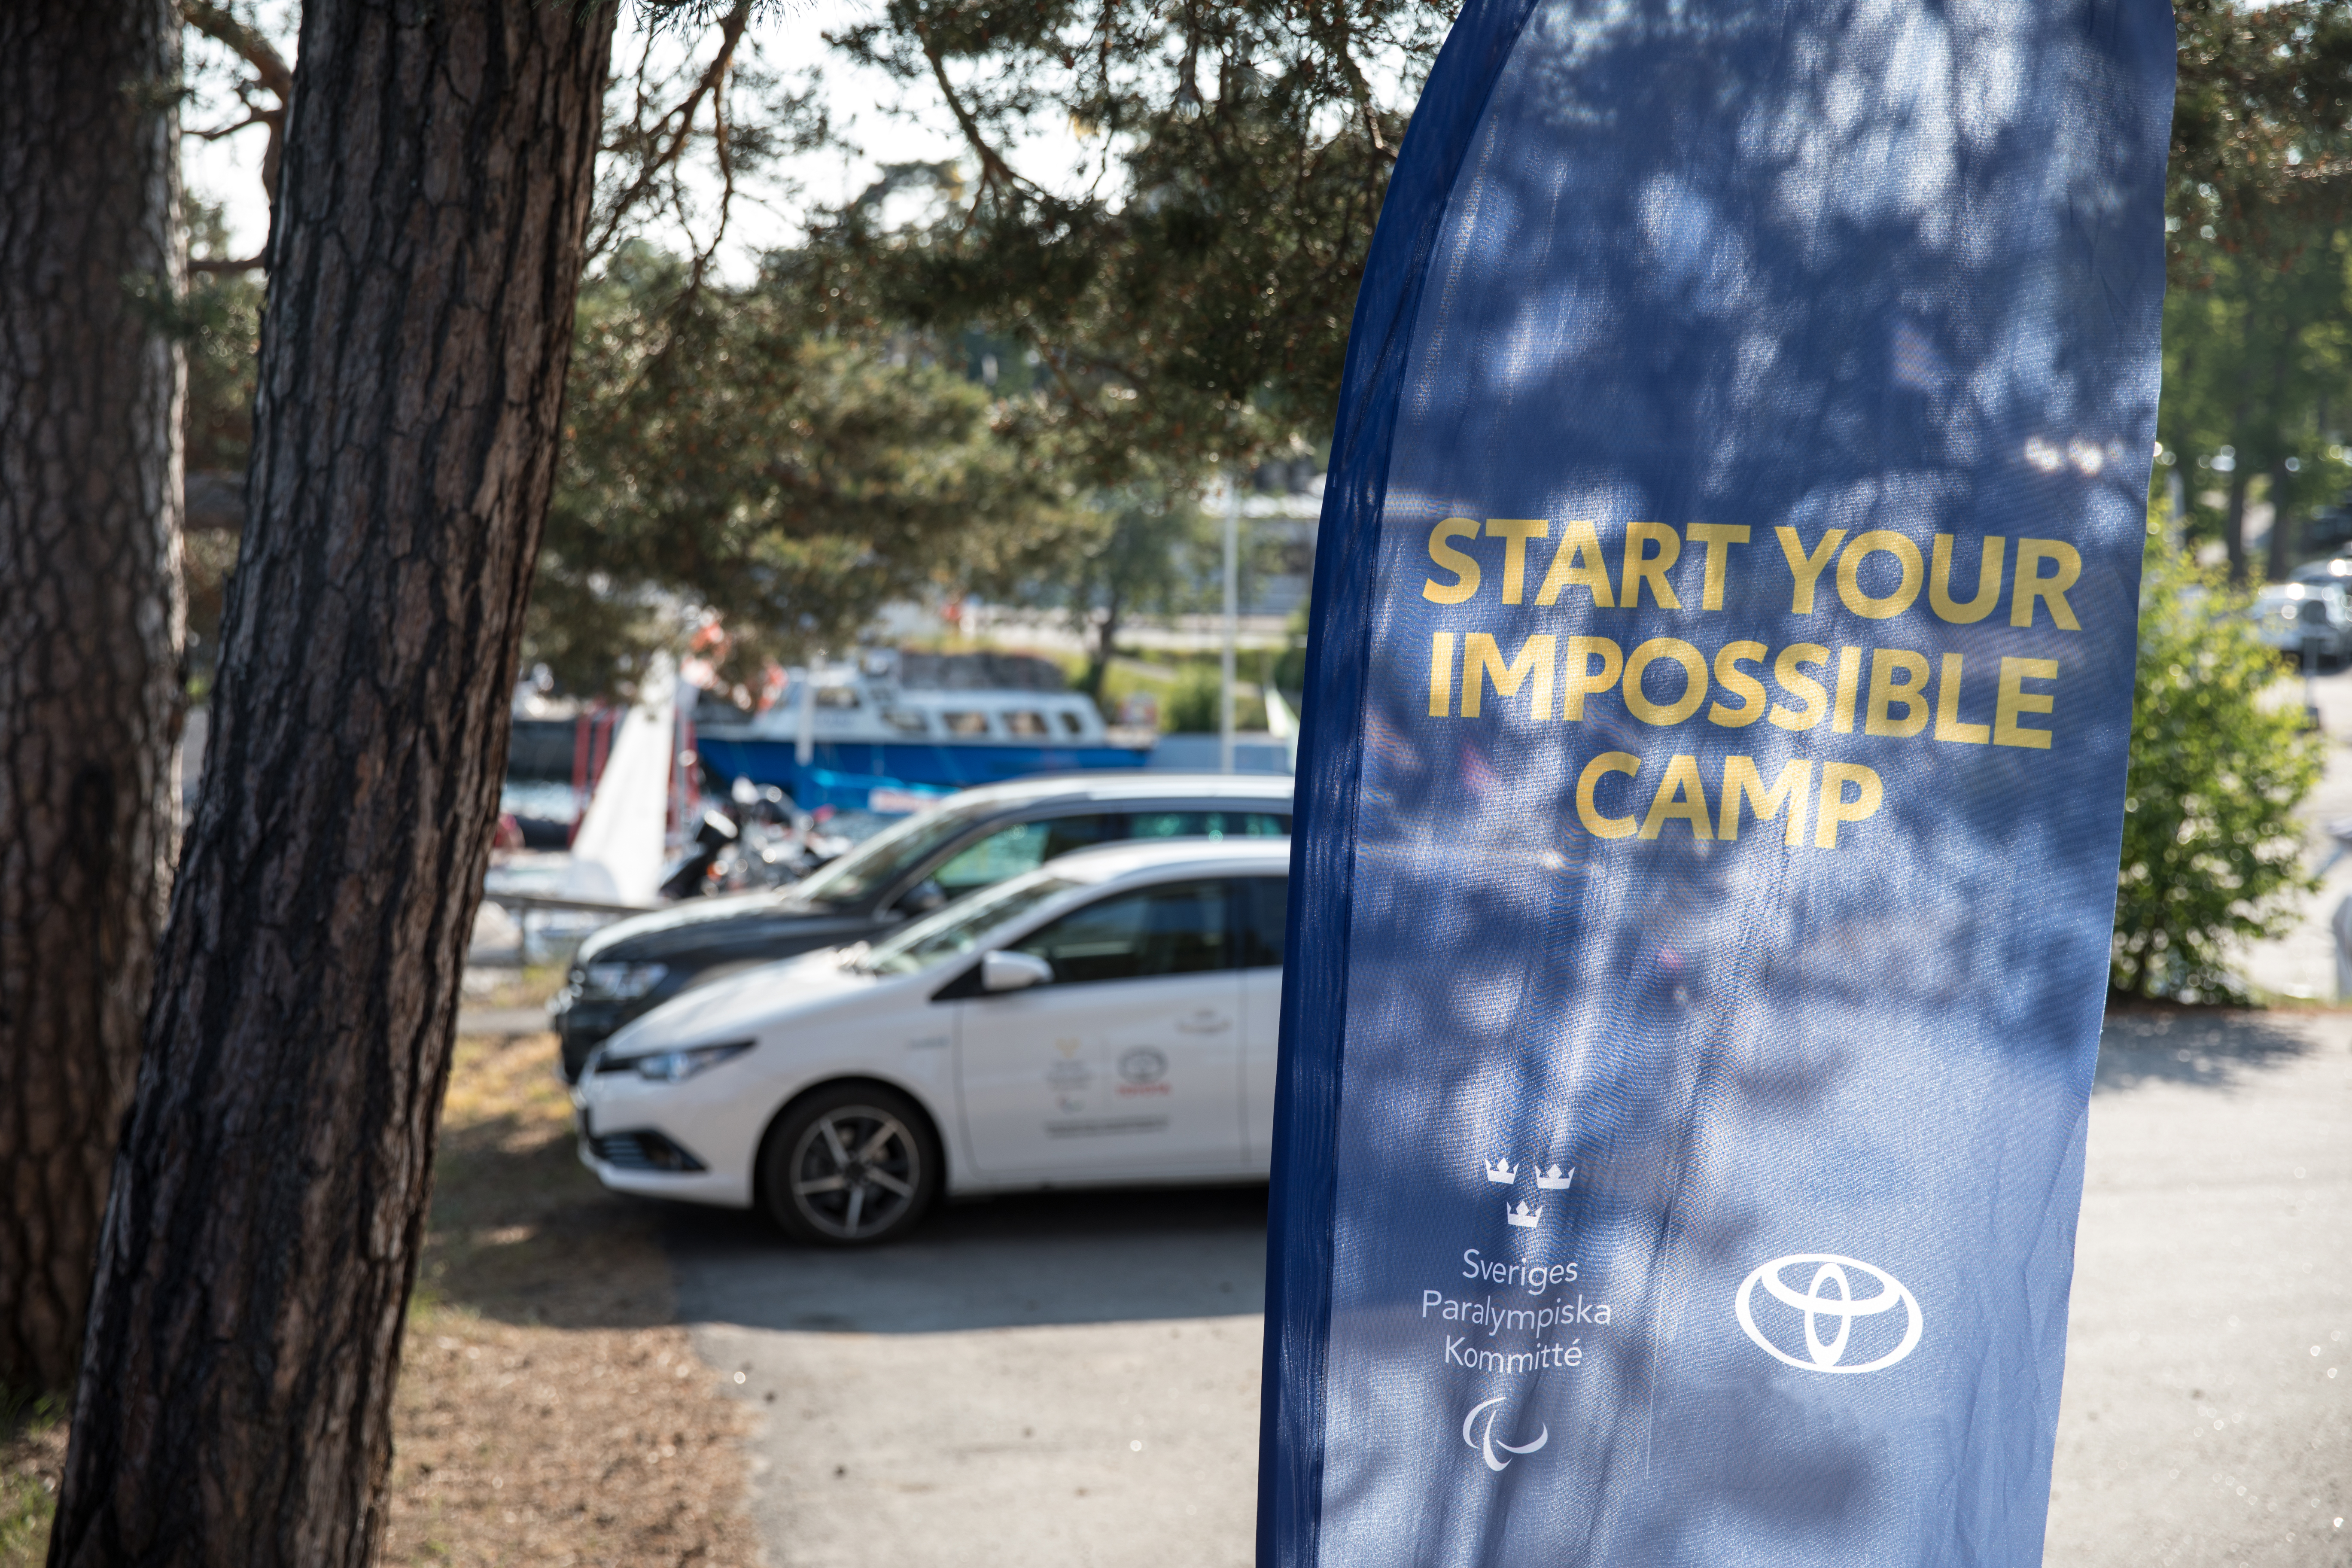 Utomhusmiljö. I förgrunden en flagga med texten Start Your Impossible Camp och logotypen för Sveriges Paralympiska Kommitté och Toyota. I bakgrunden en grusplan med en vit Toyota-bil parkerad.